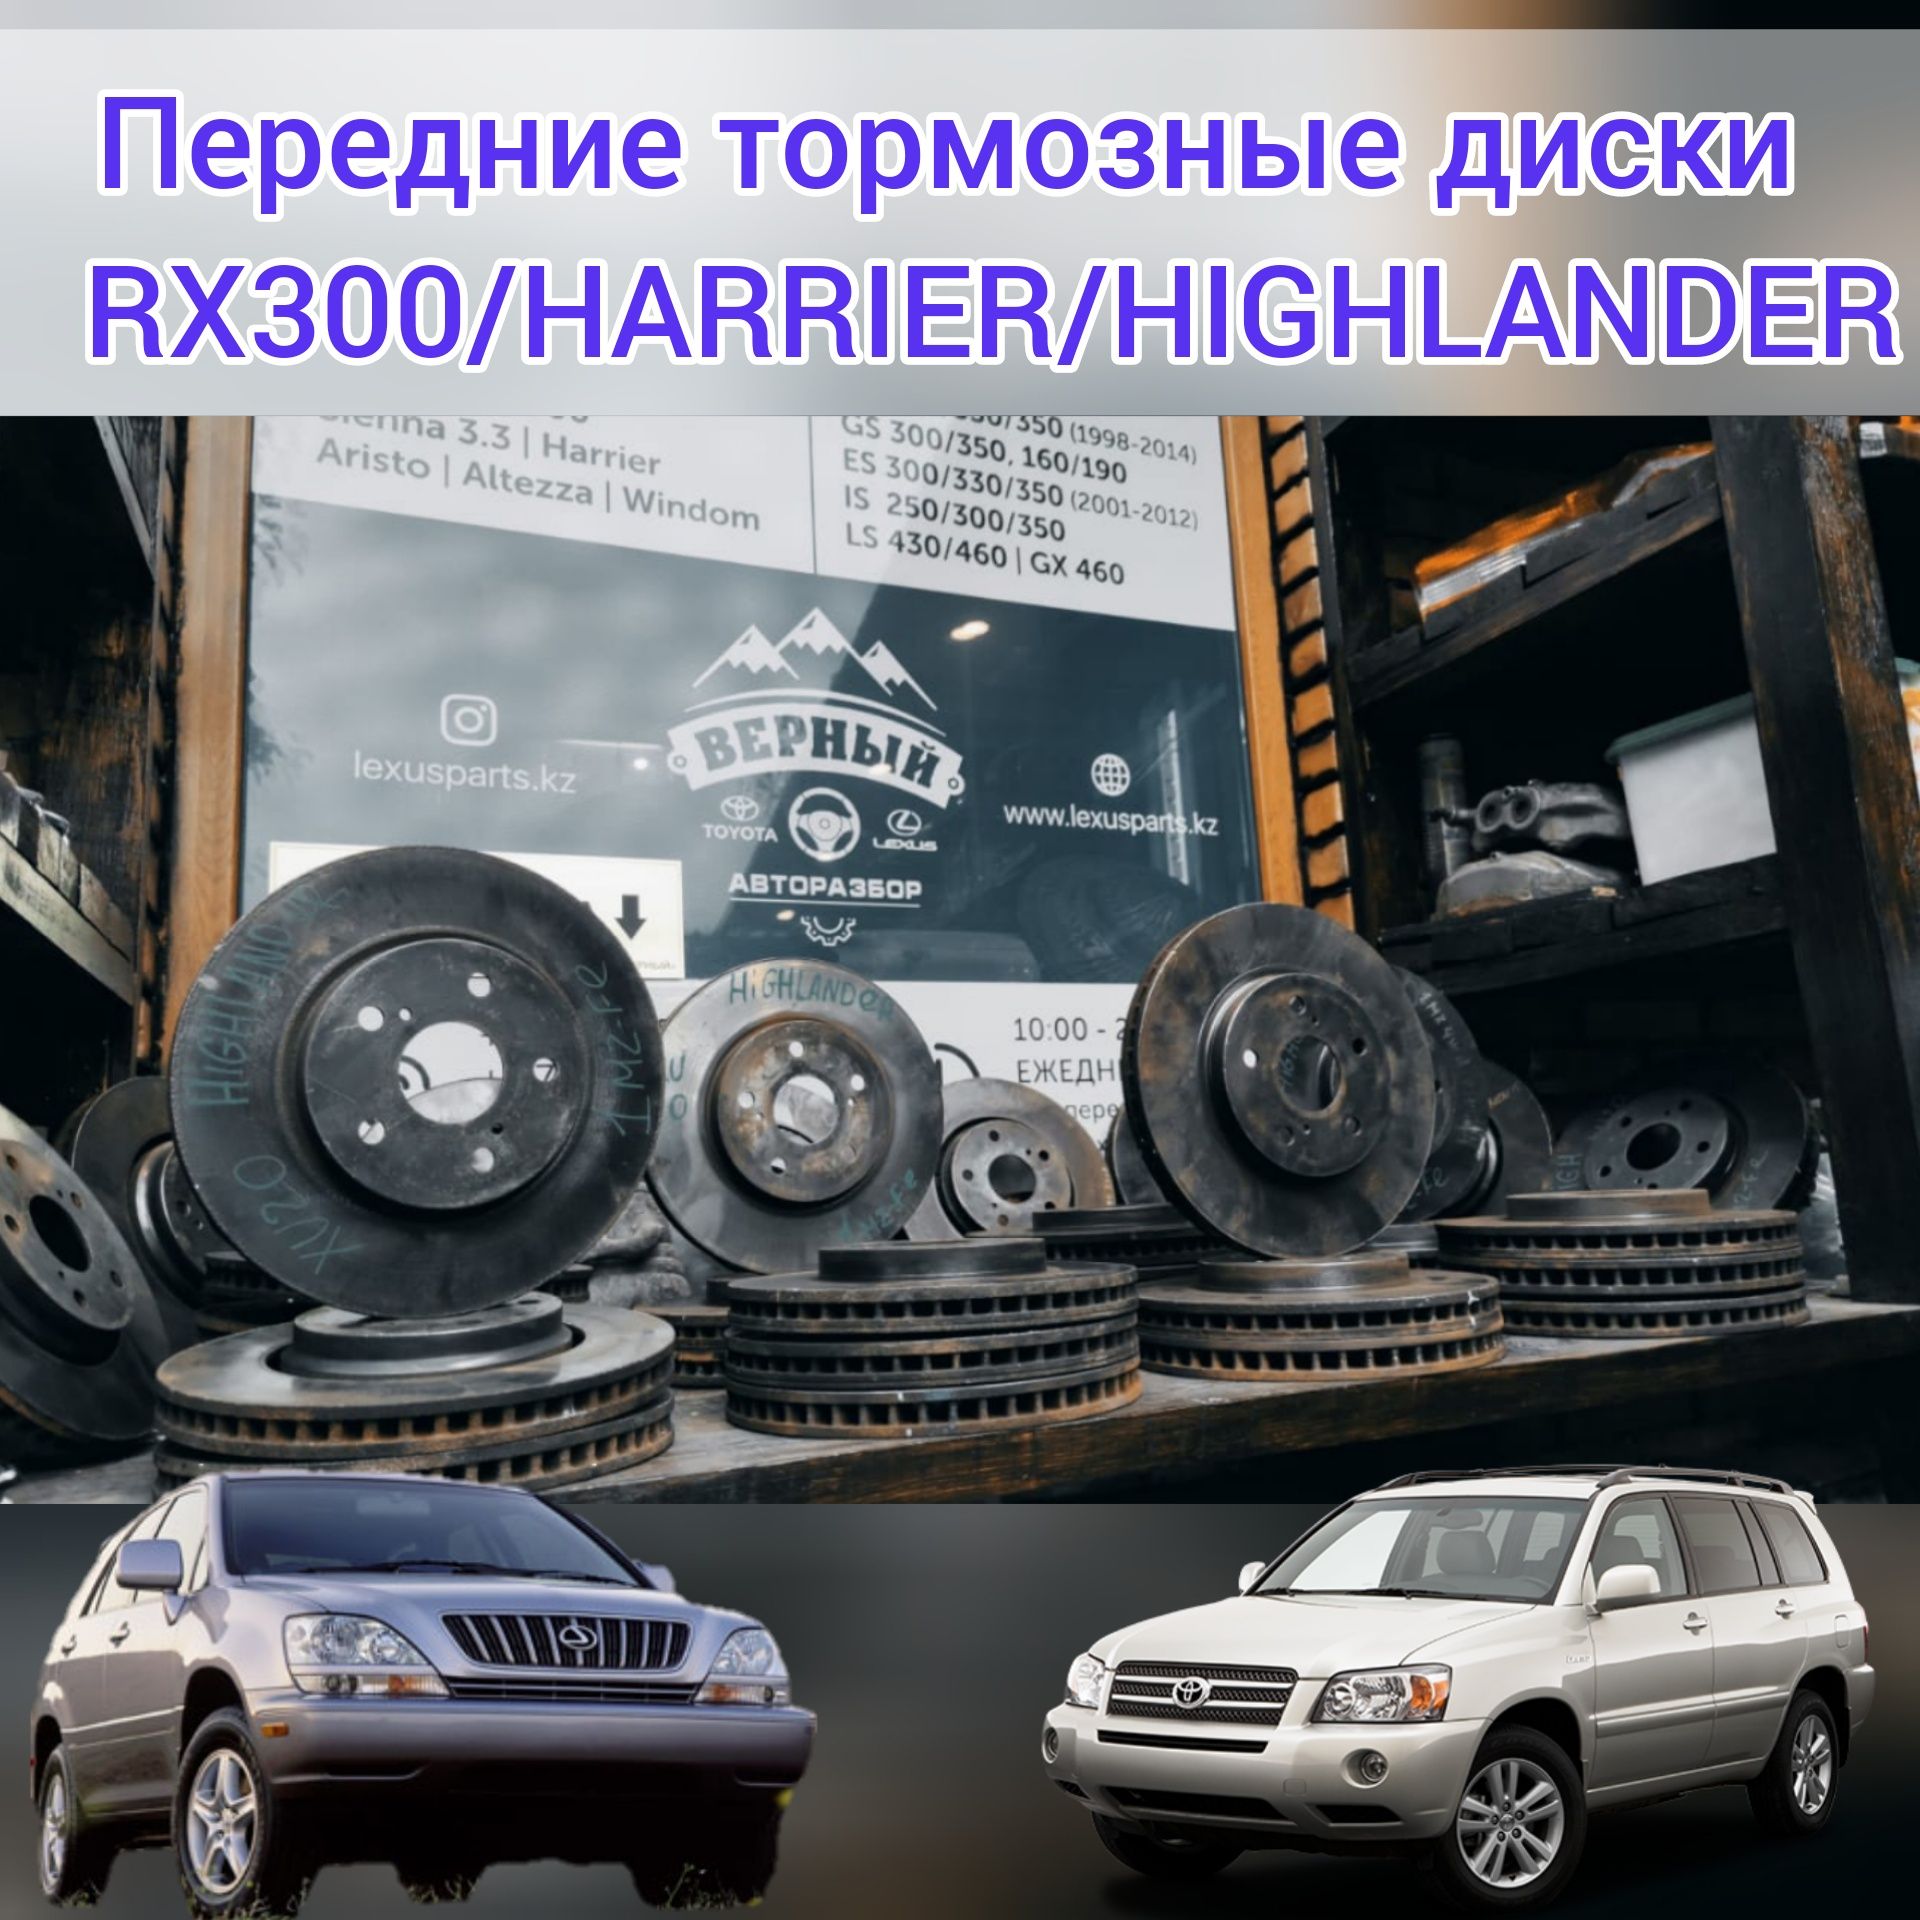 Передние тормозные диски
Lexus RX300/Harrier/Highlander